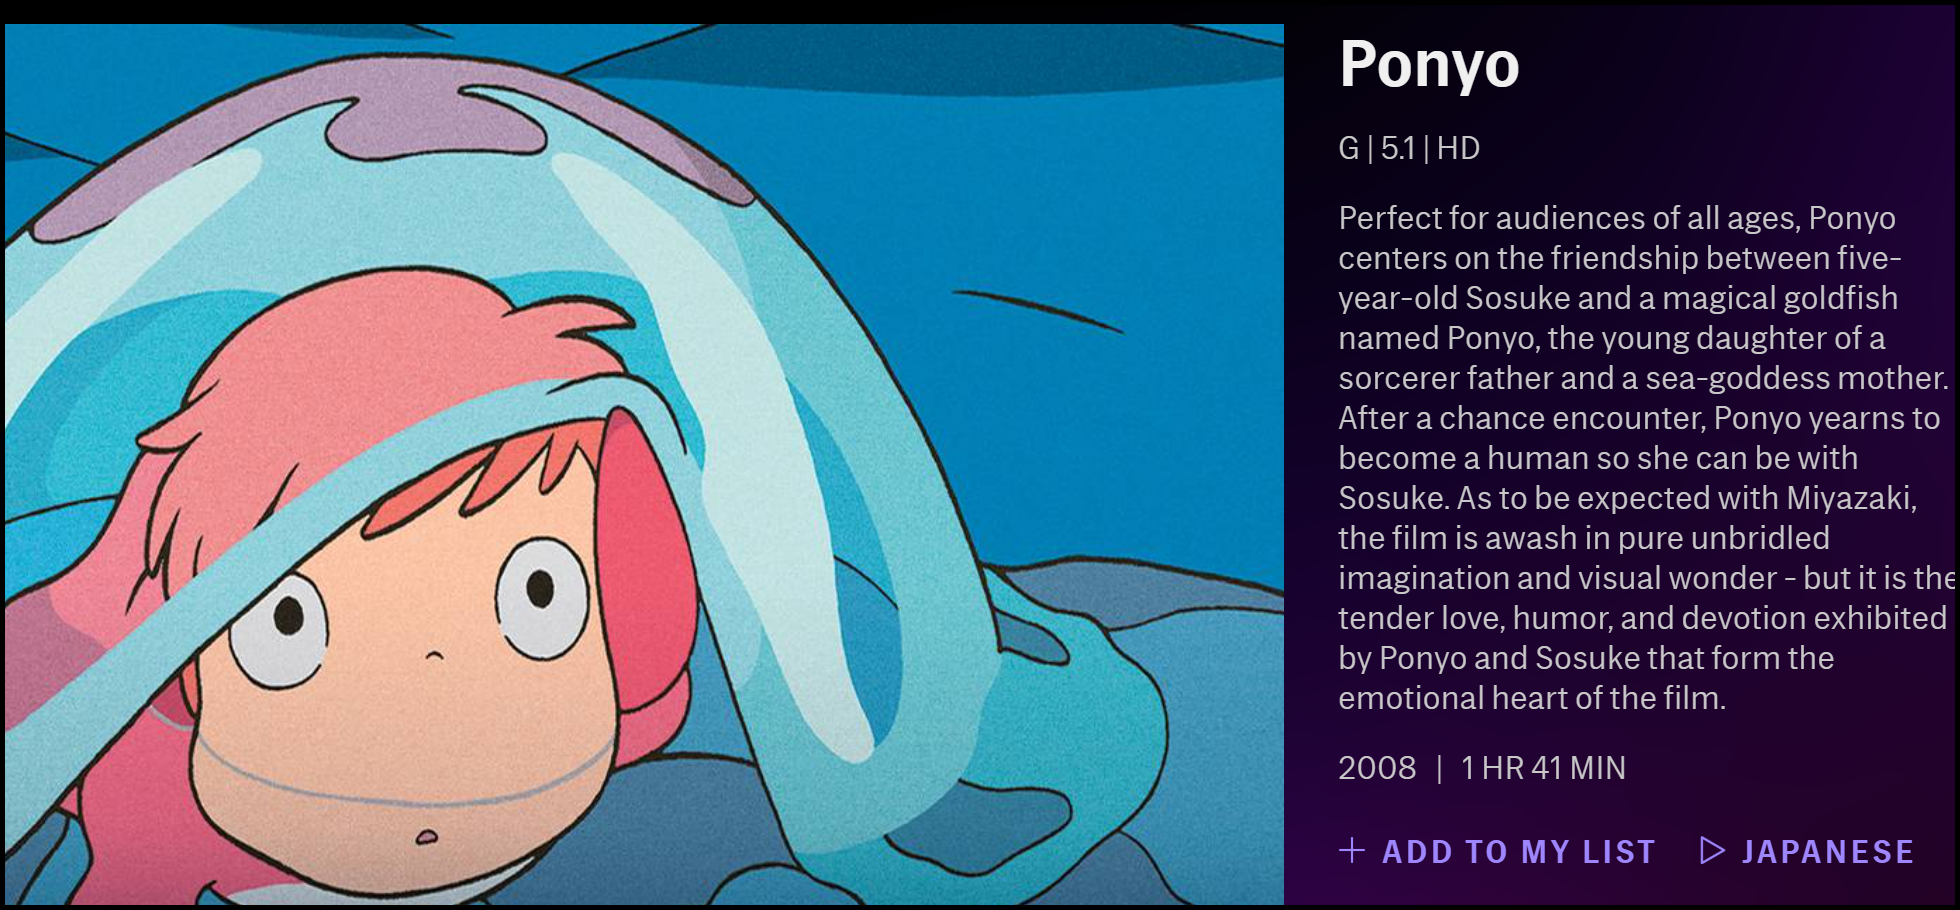 La descripción de "Ponyo" en HBO Max.